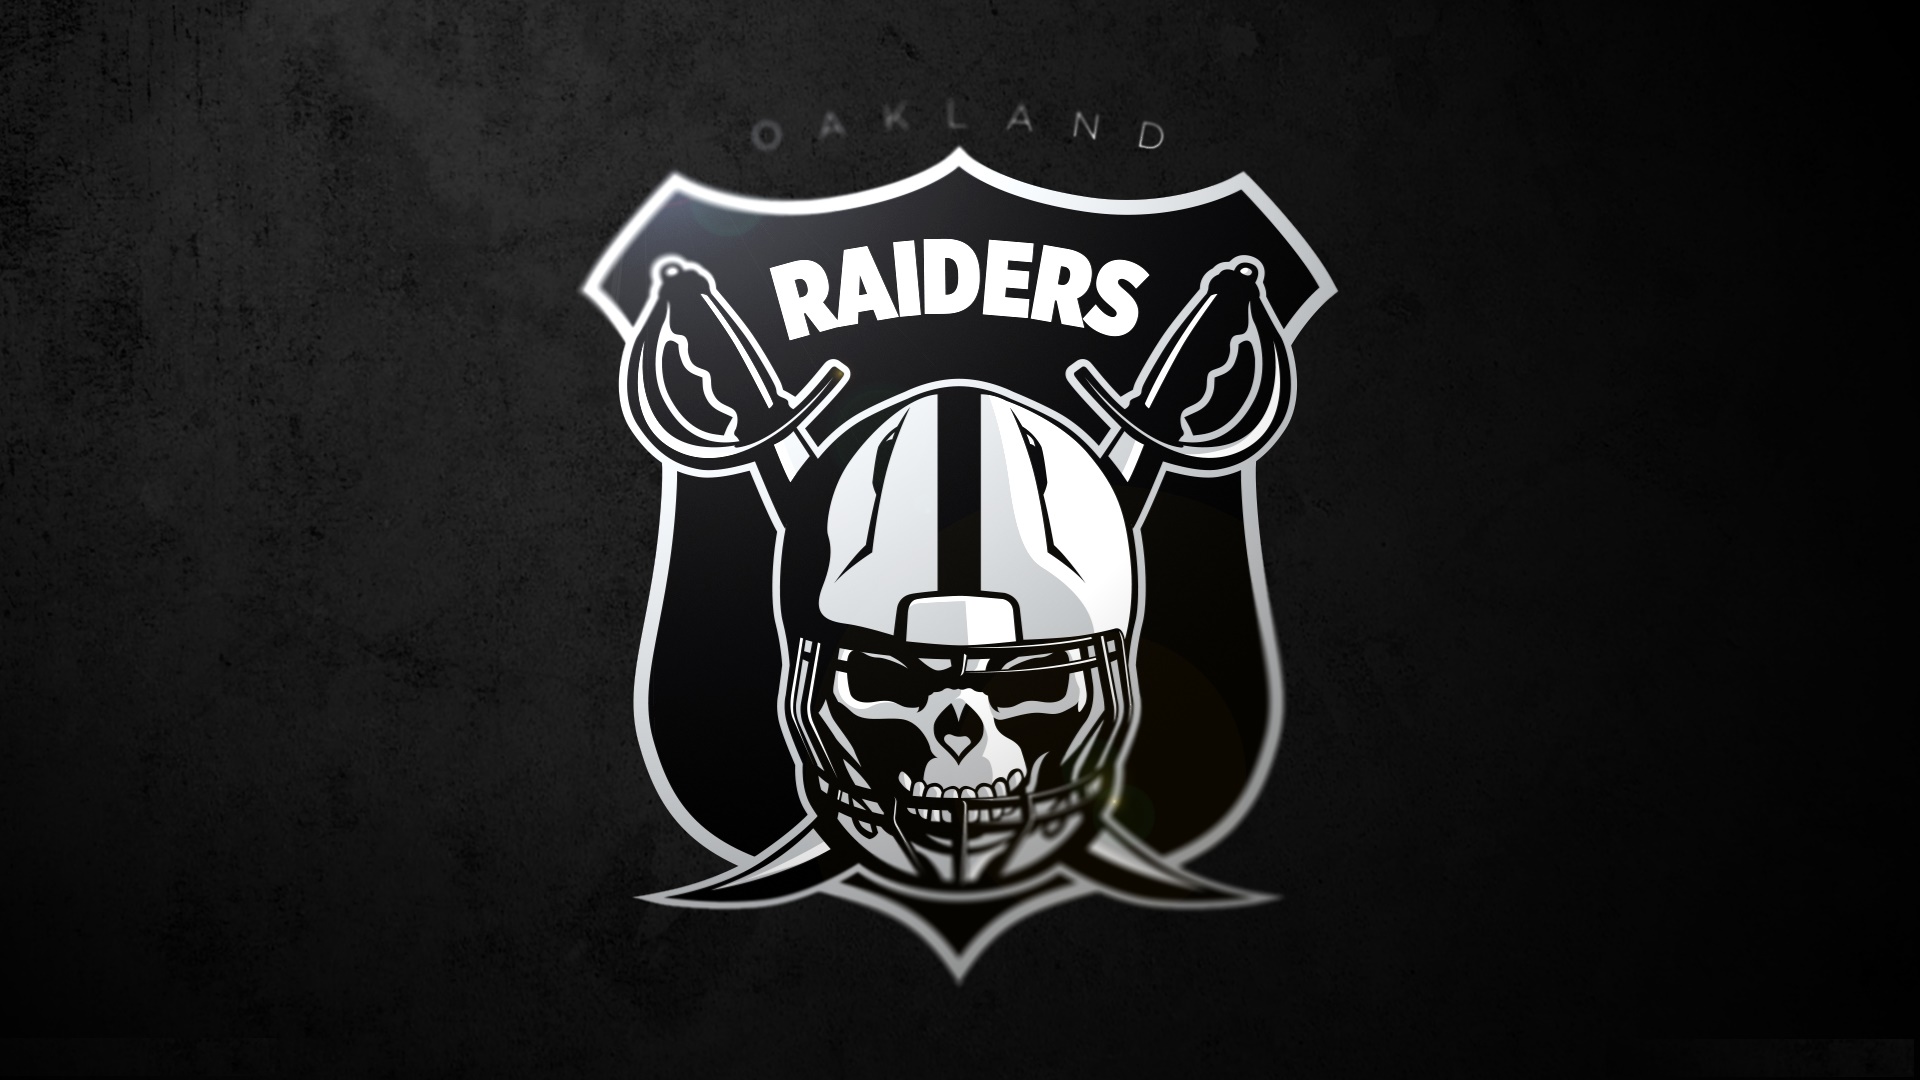 49+] Raiders iPhone Wallpaper on WallpaperSafari  Dodgers, Oakland raiders  logo, Raiders wallpaper